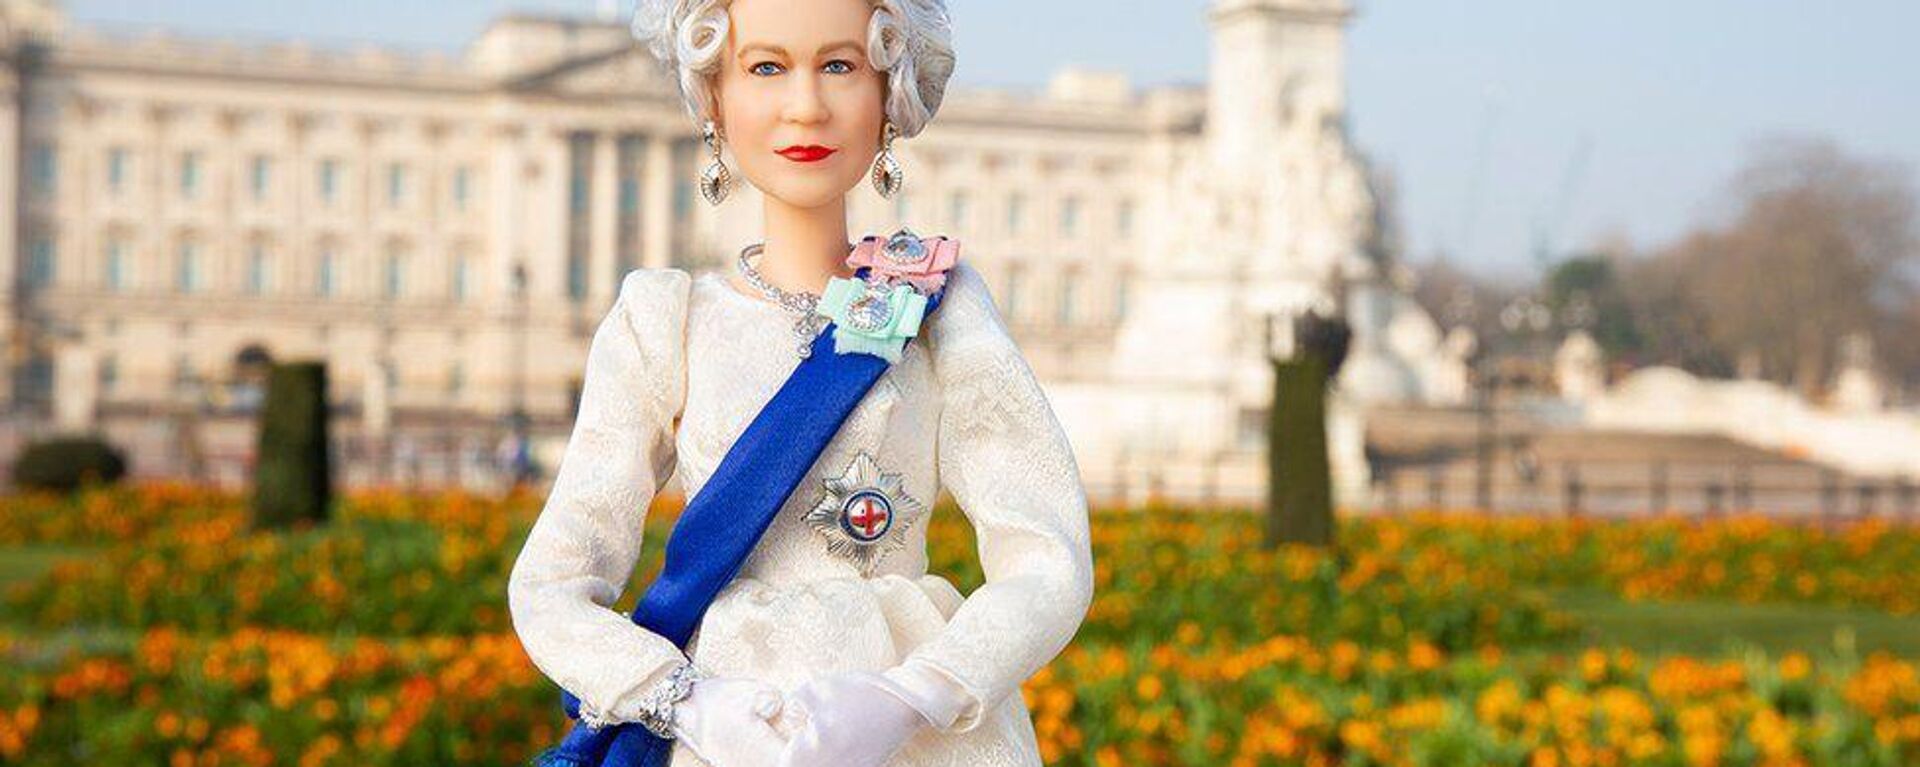 Kraliçe Elizabeth 96 yaşına girdi: Doğum gününe özel Barbie bebeği üretildi - Sputnik Türkiye, 1920, 21.04.2022